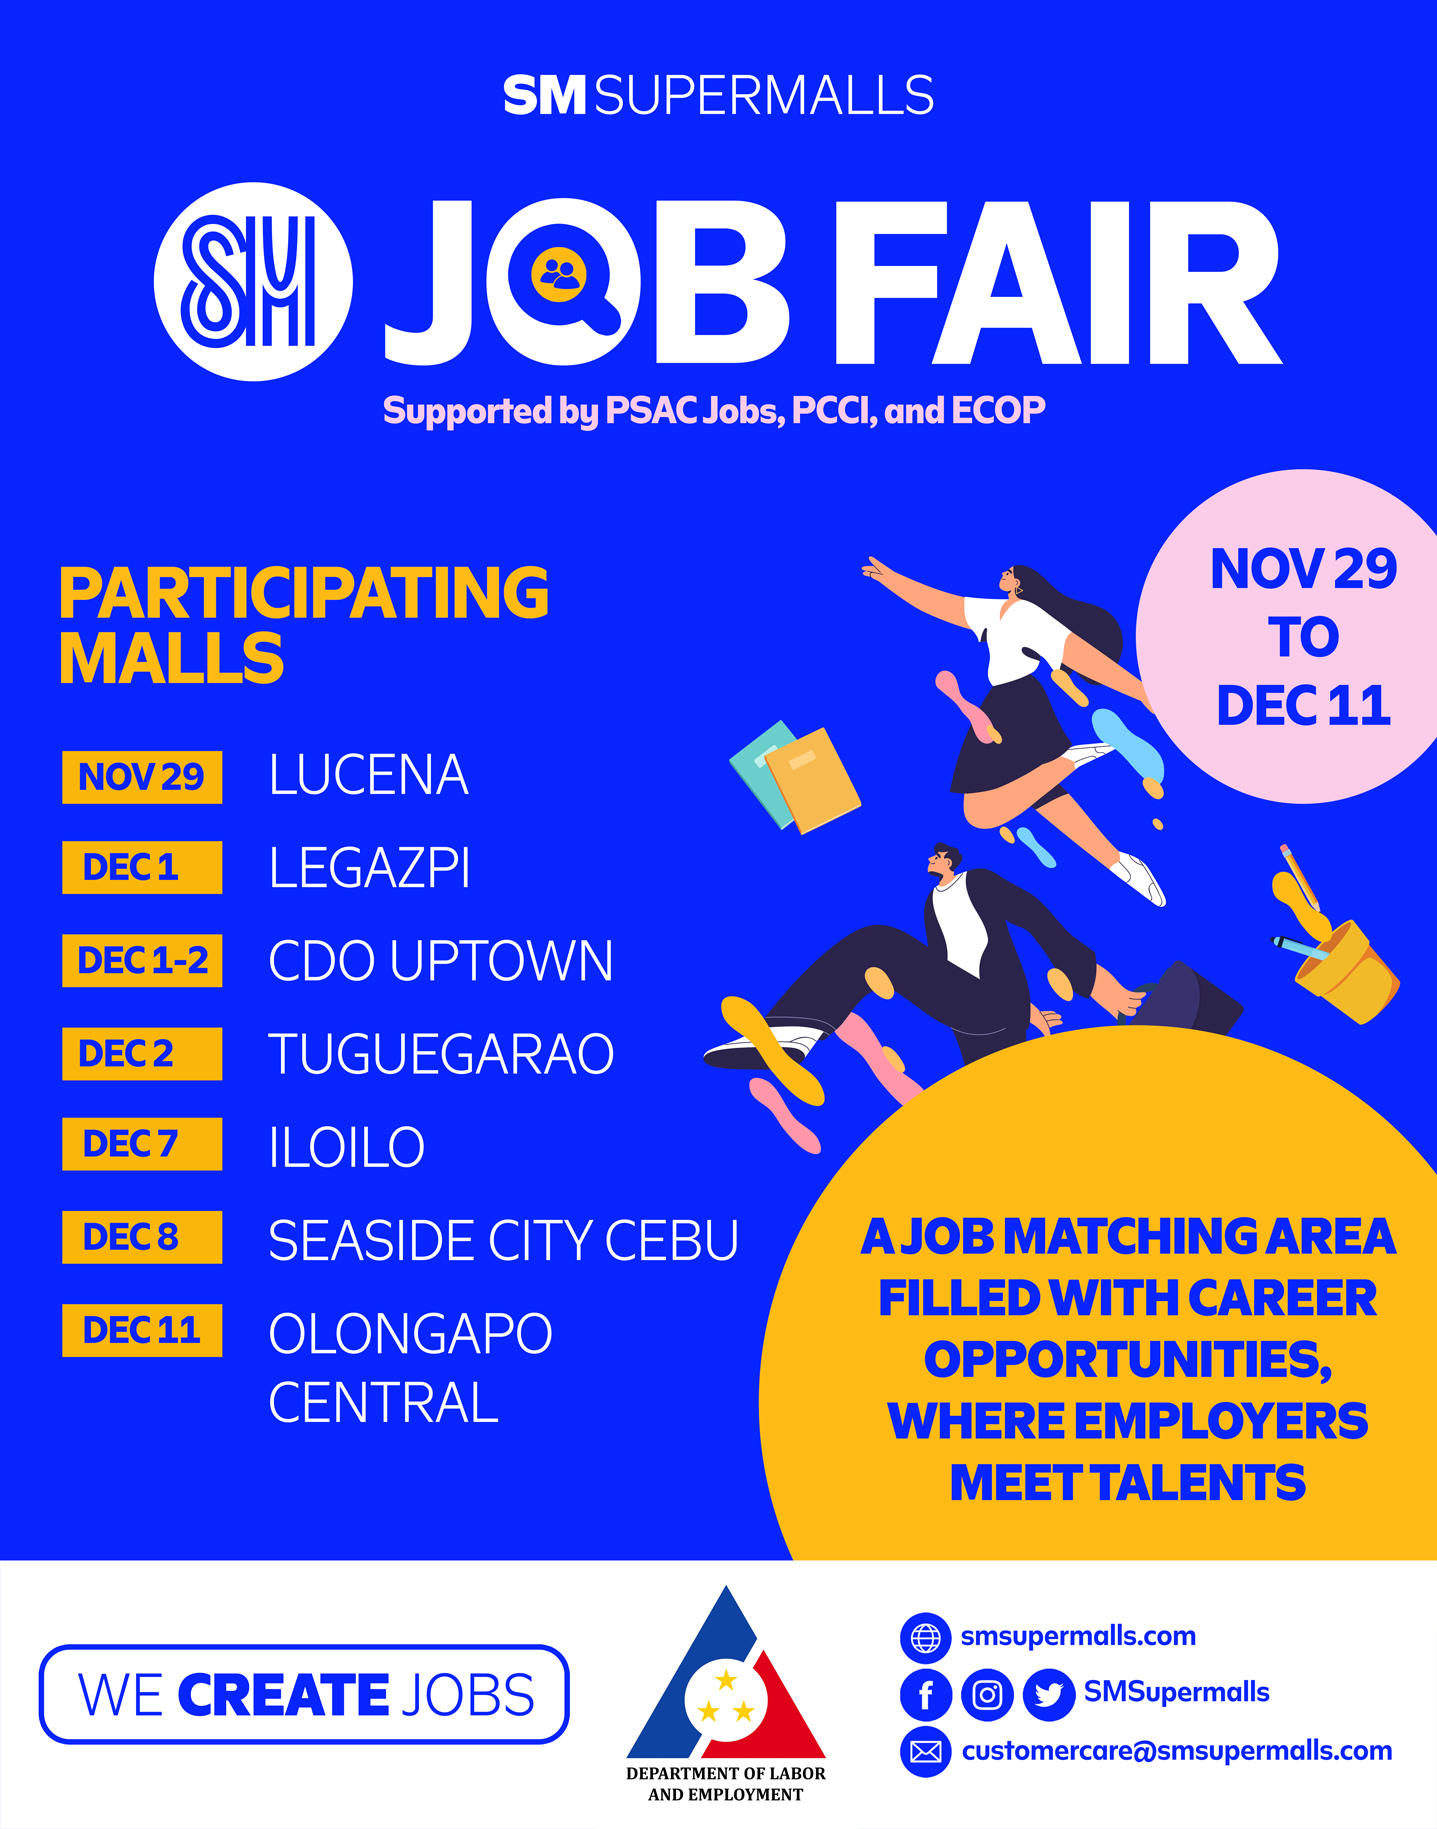 SM Supermalls job fair